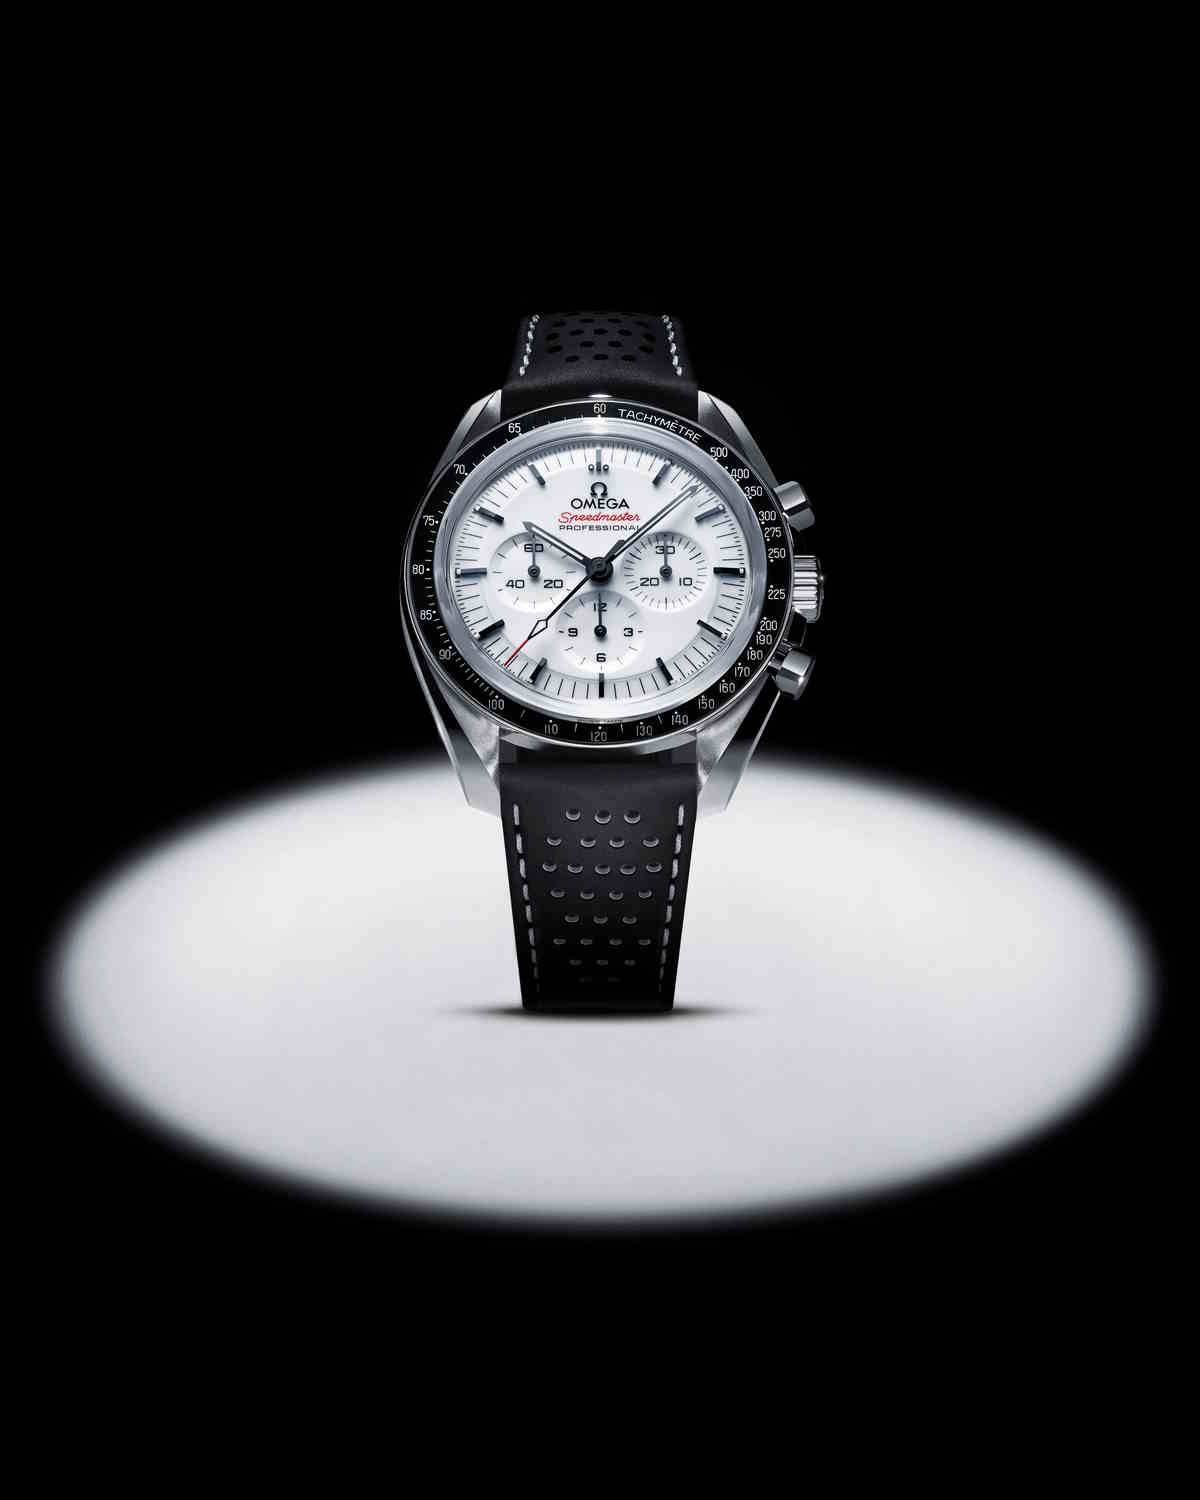 Nowy model kultowego zegarka Omega Moonwatch Speedmaster. Po prototypie ALASKA I, który nosili uczestnicy misji Apollo 13, przyszła kolej na zegarek Jamesa Bonda gotowy na najtrudniejszą misję, nawet księżycową.